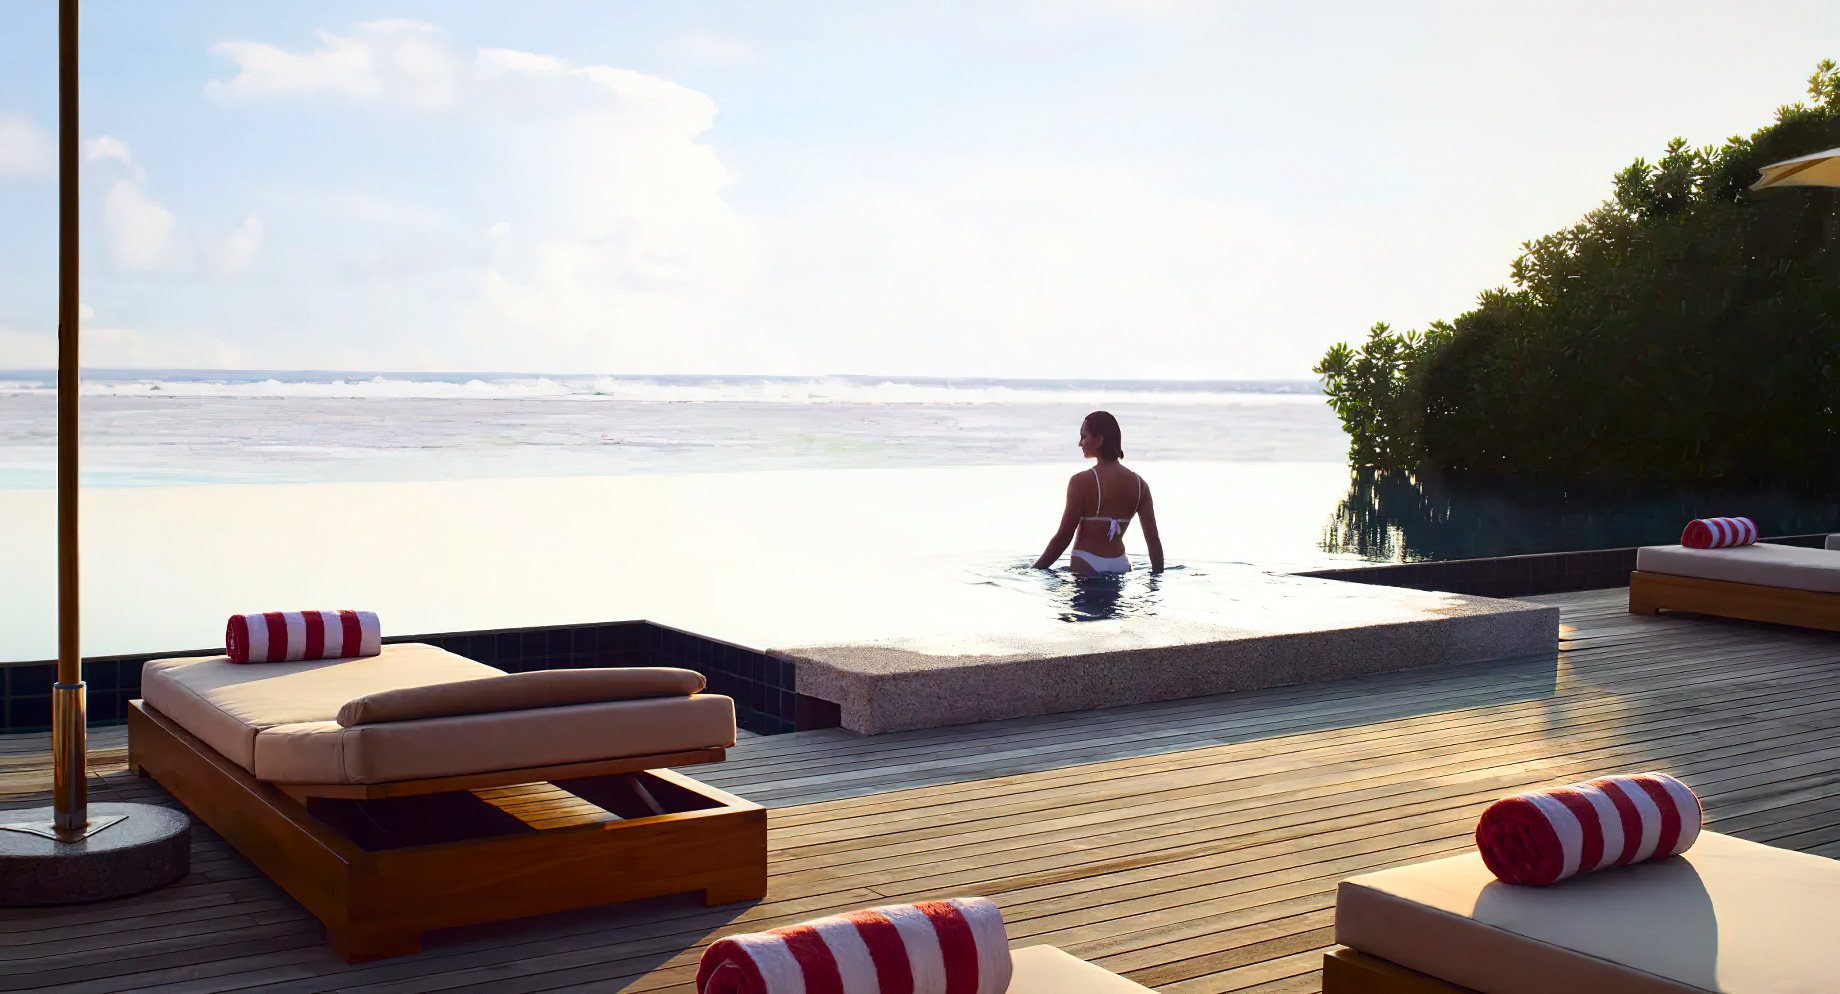 Anantara Veli Maldives Resort – South Male Atoll, Maldives – Infinity Pool Ocean View